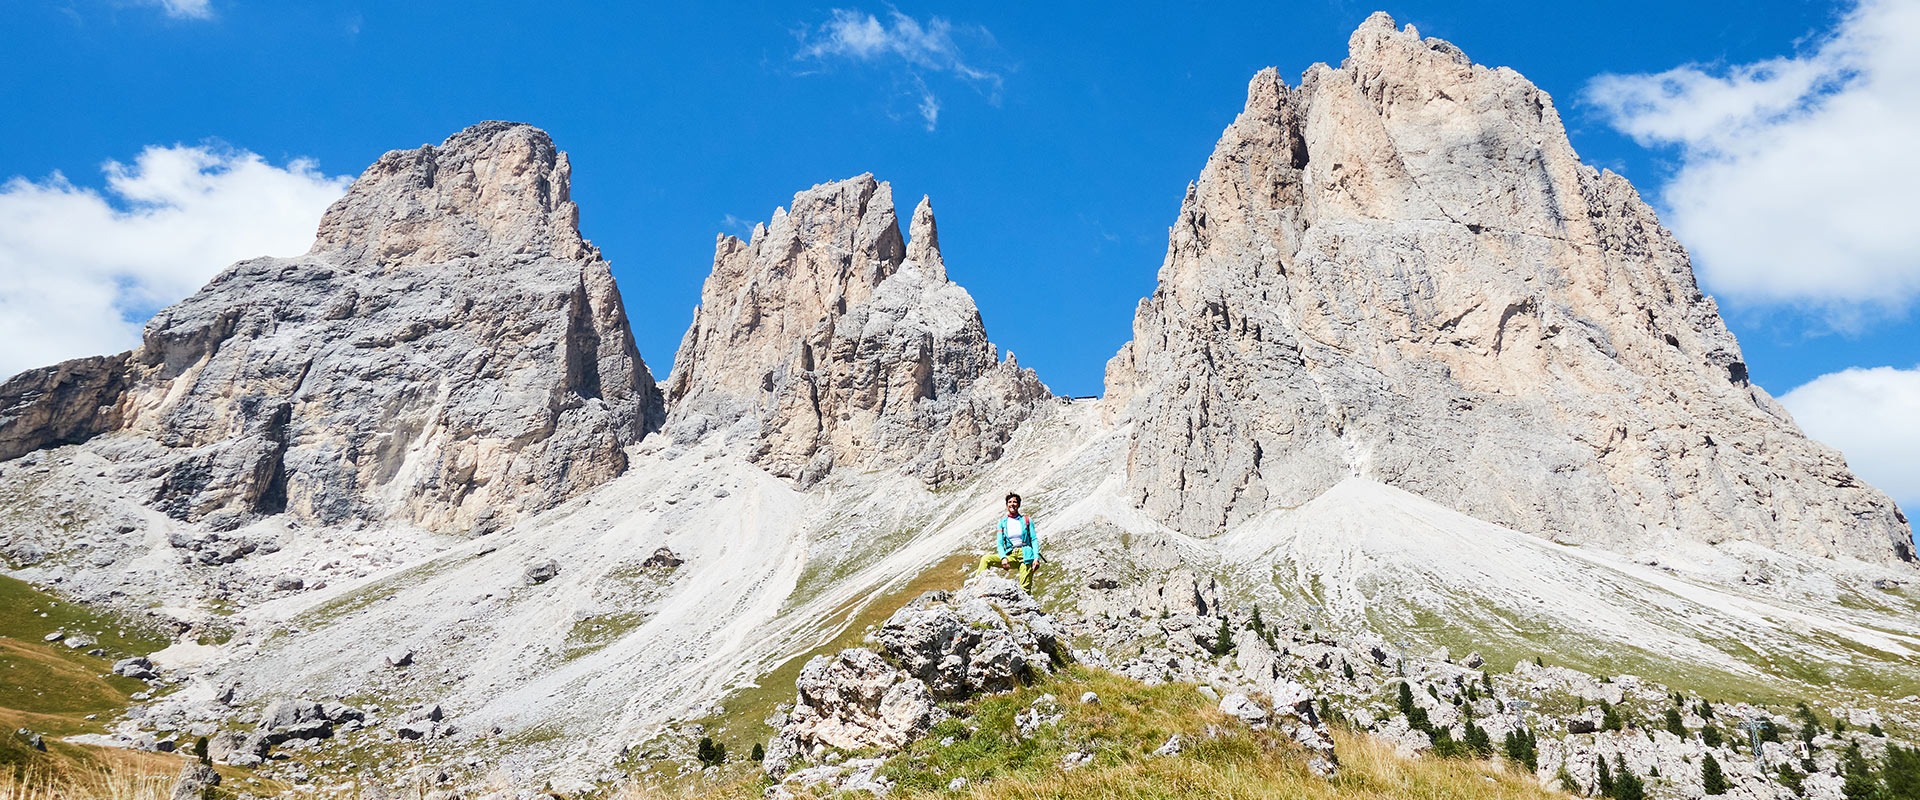 Climbing Val Gardena - Sassolungo